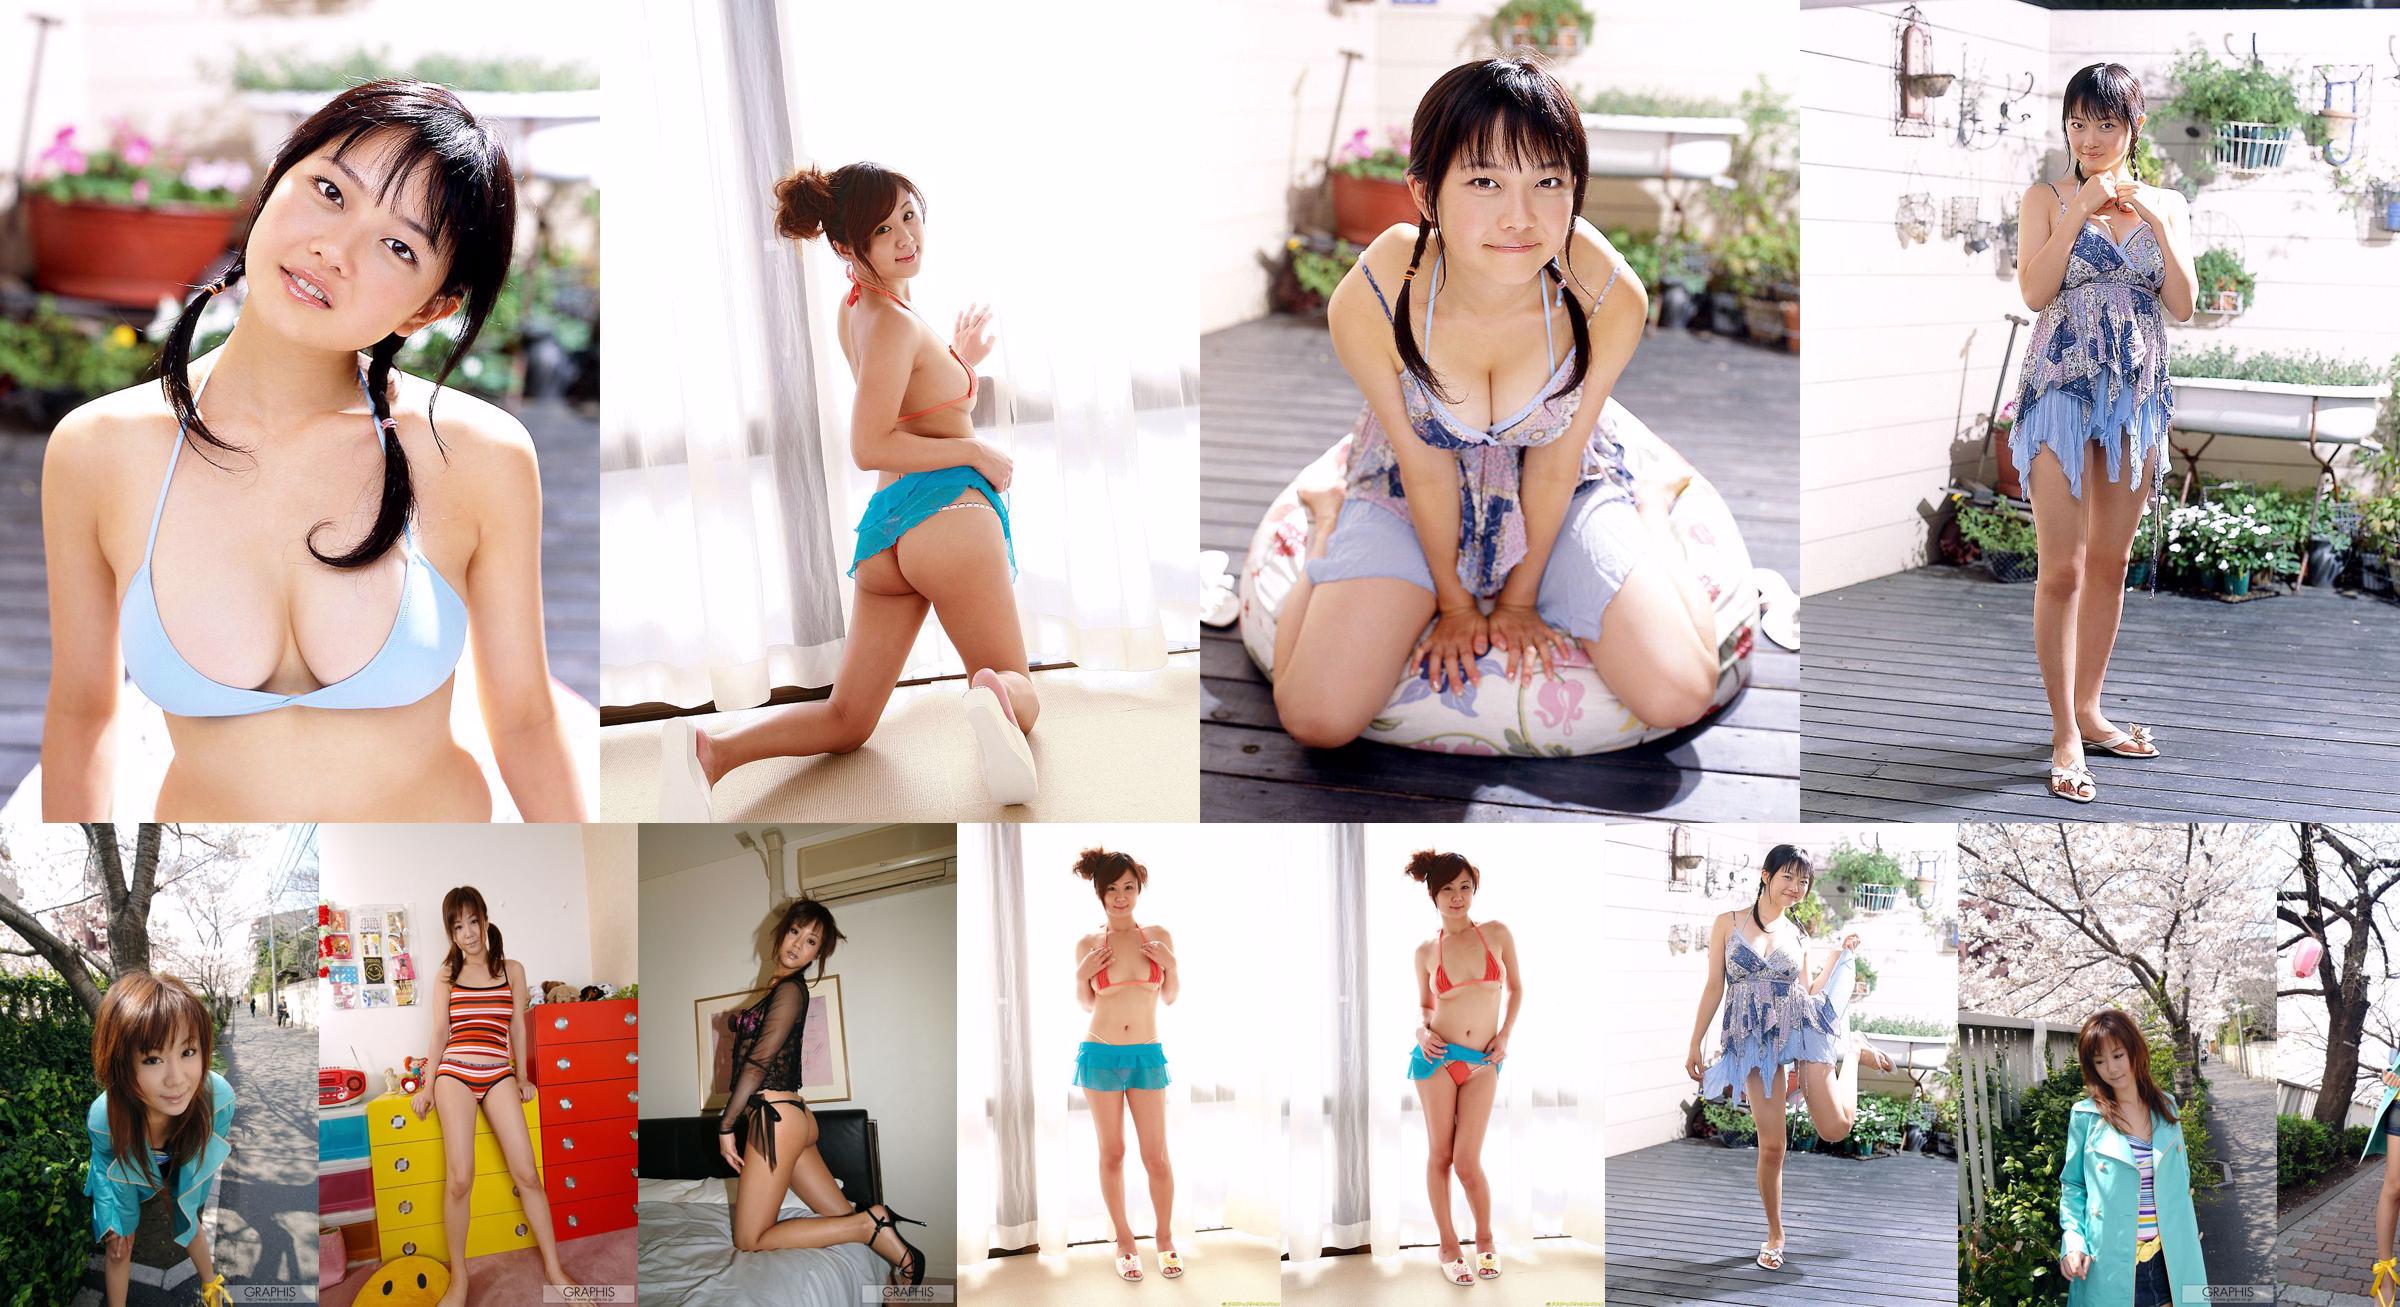 [DGC] N ° 569 Maki Hoshino "Adult Idol" No.bc7a3b Page 43